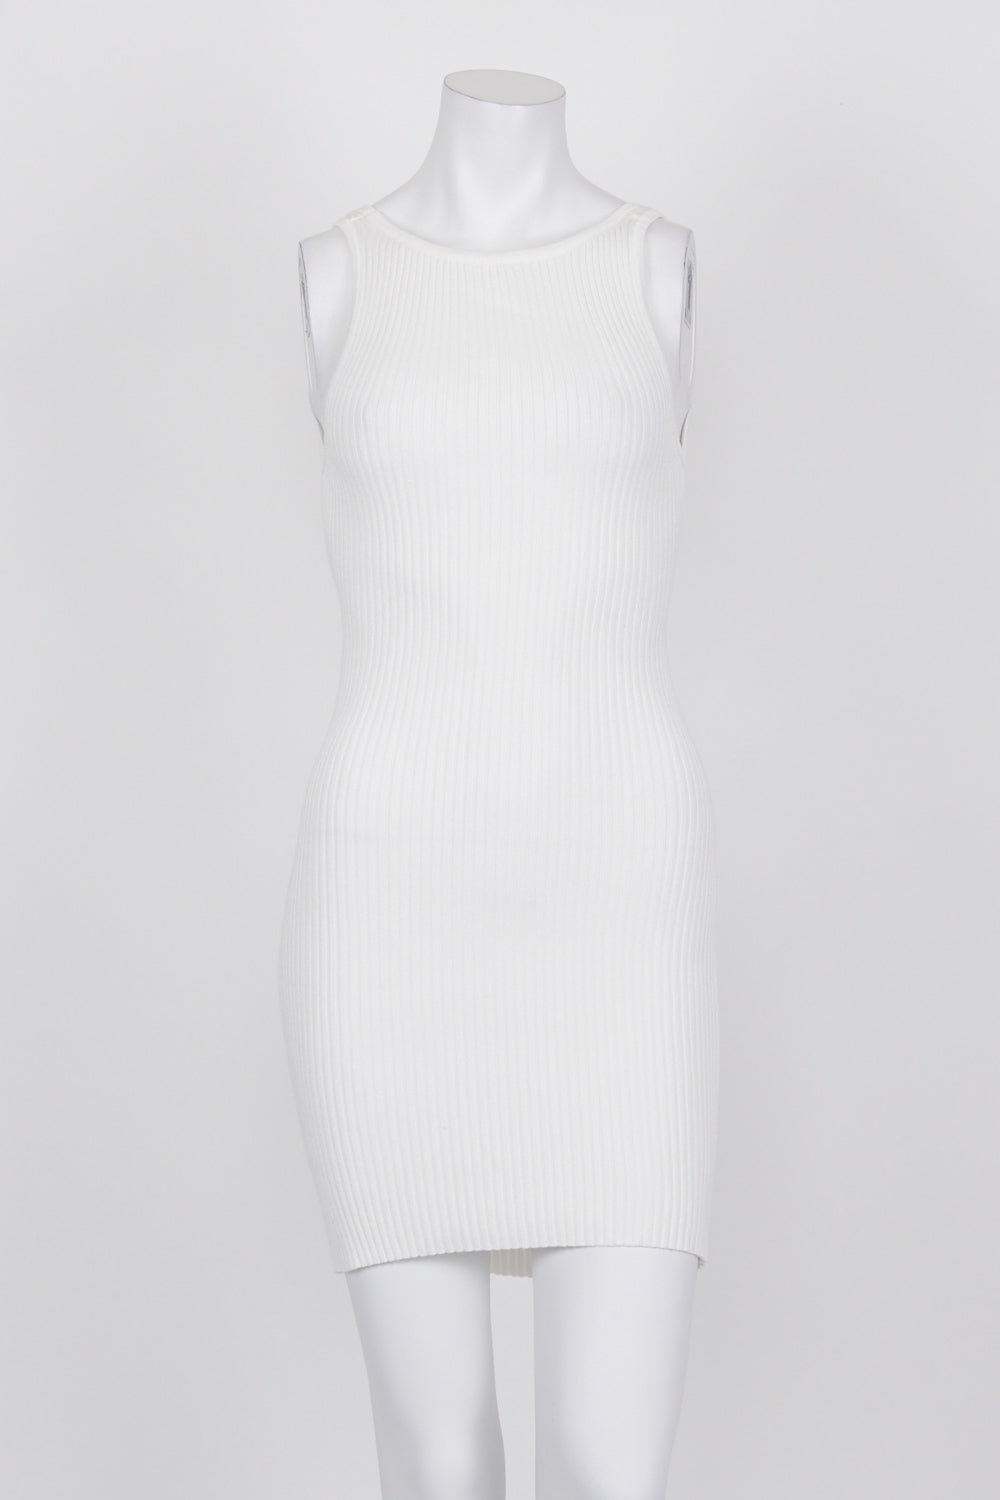 Perfect Stranger White Mini Dress 8